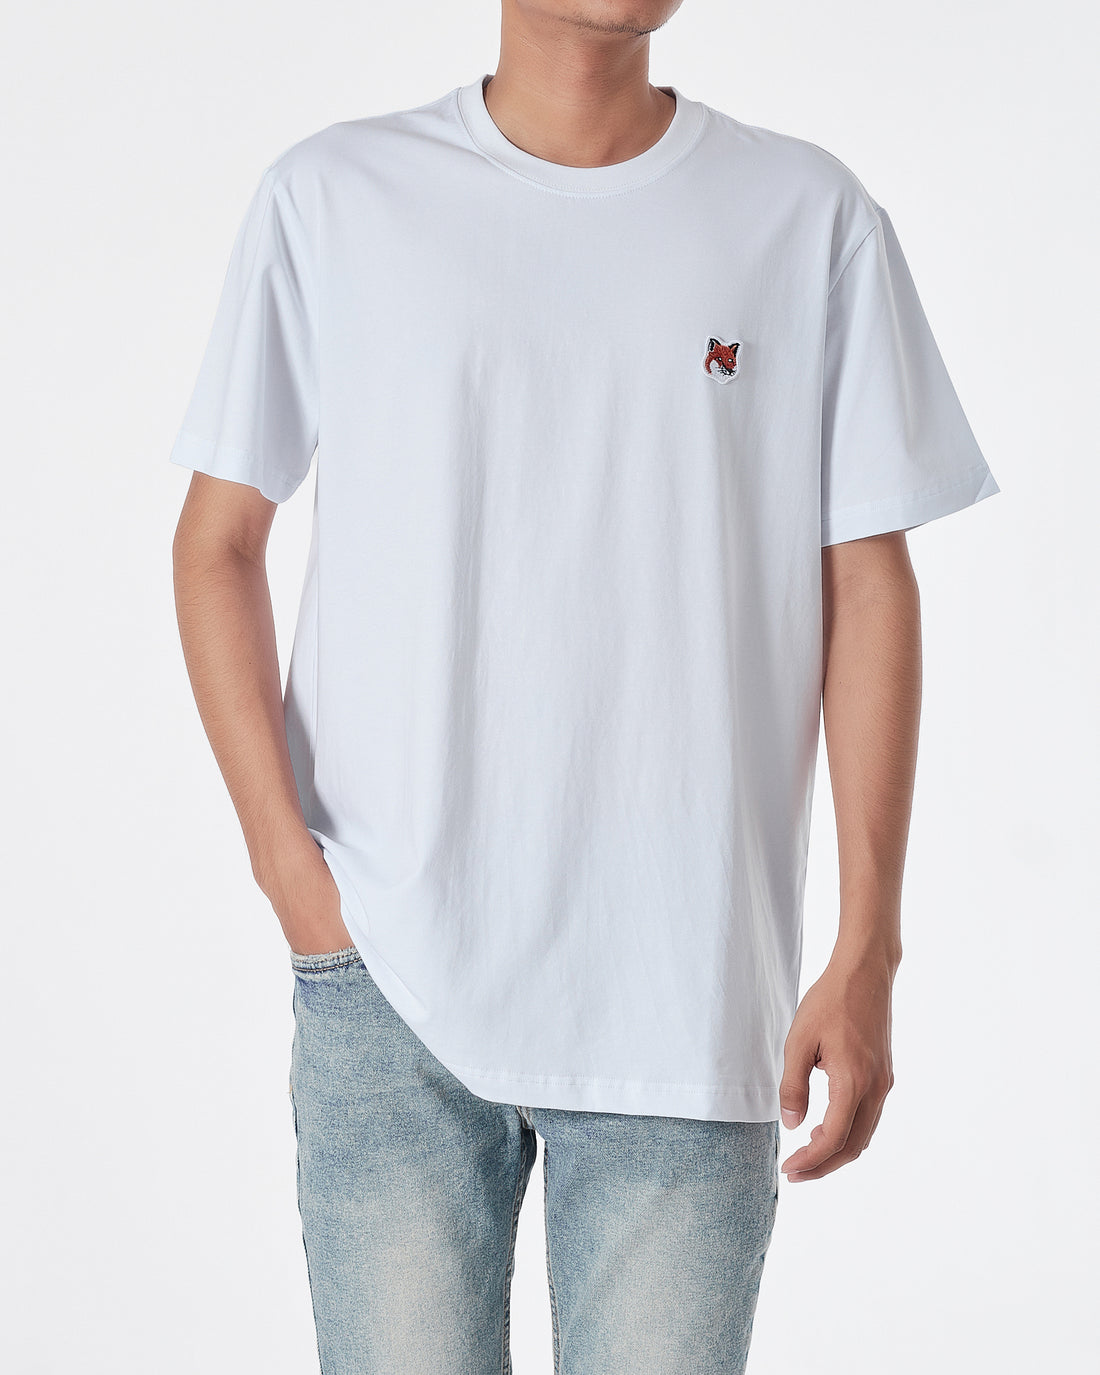 MKI Fox Embroidered Men White T-Shirt 14.90